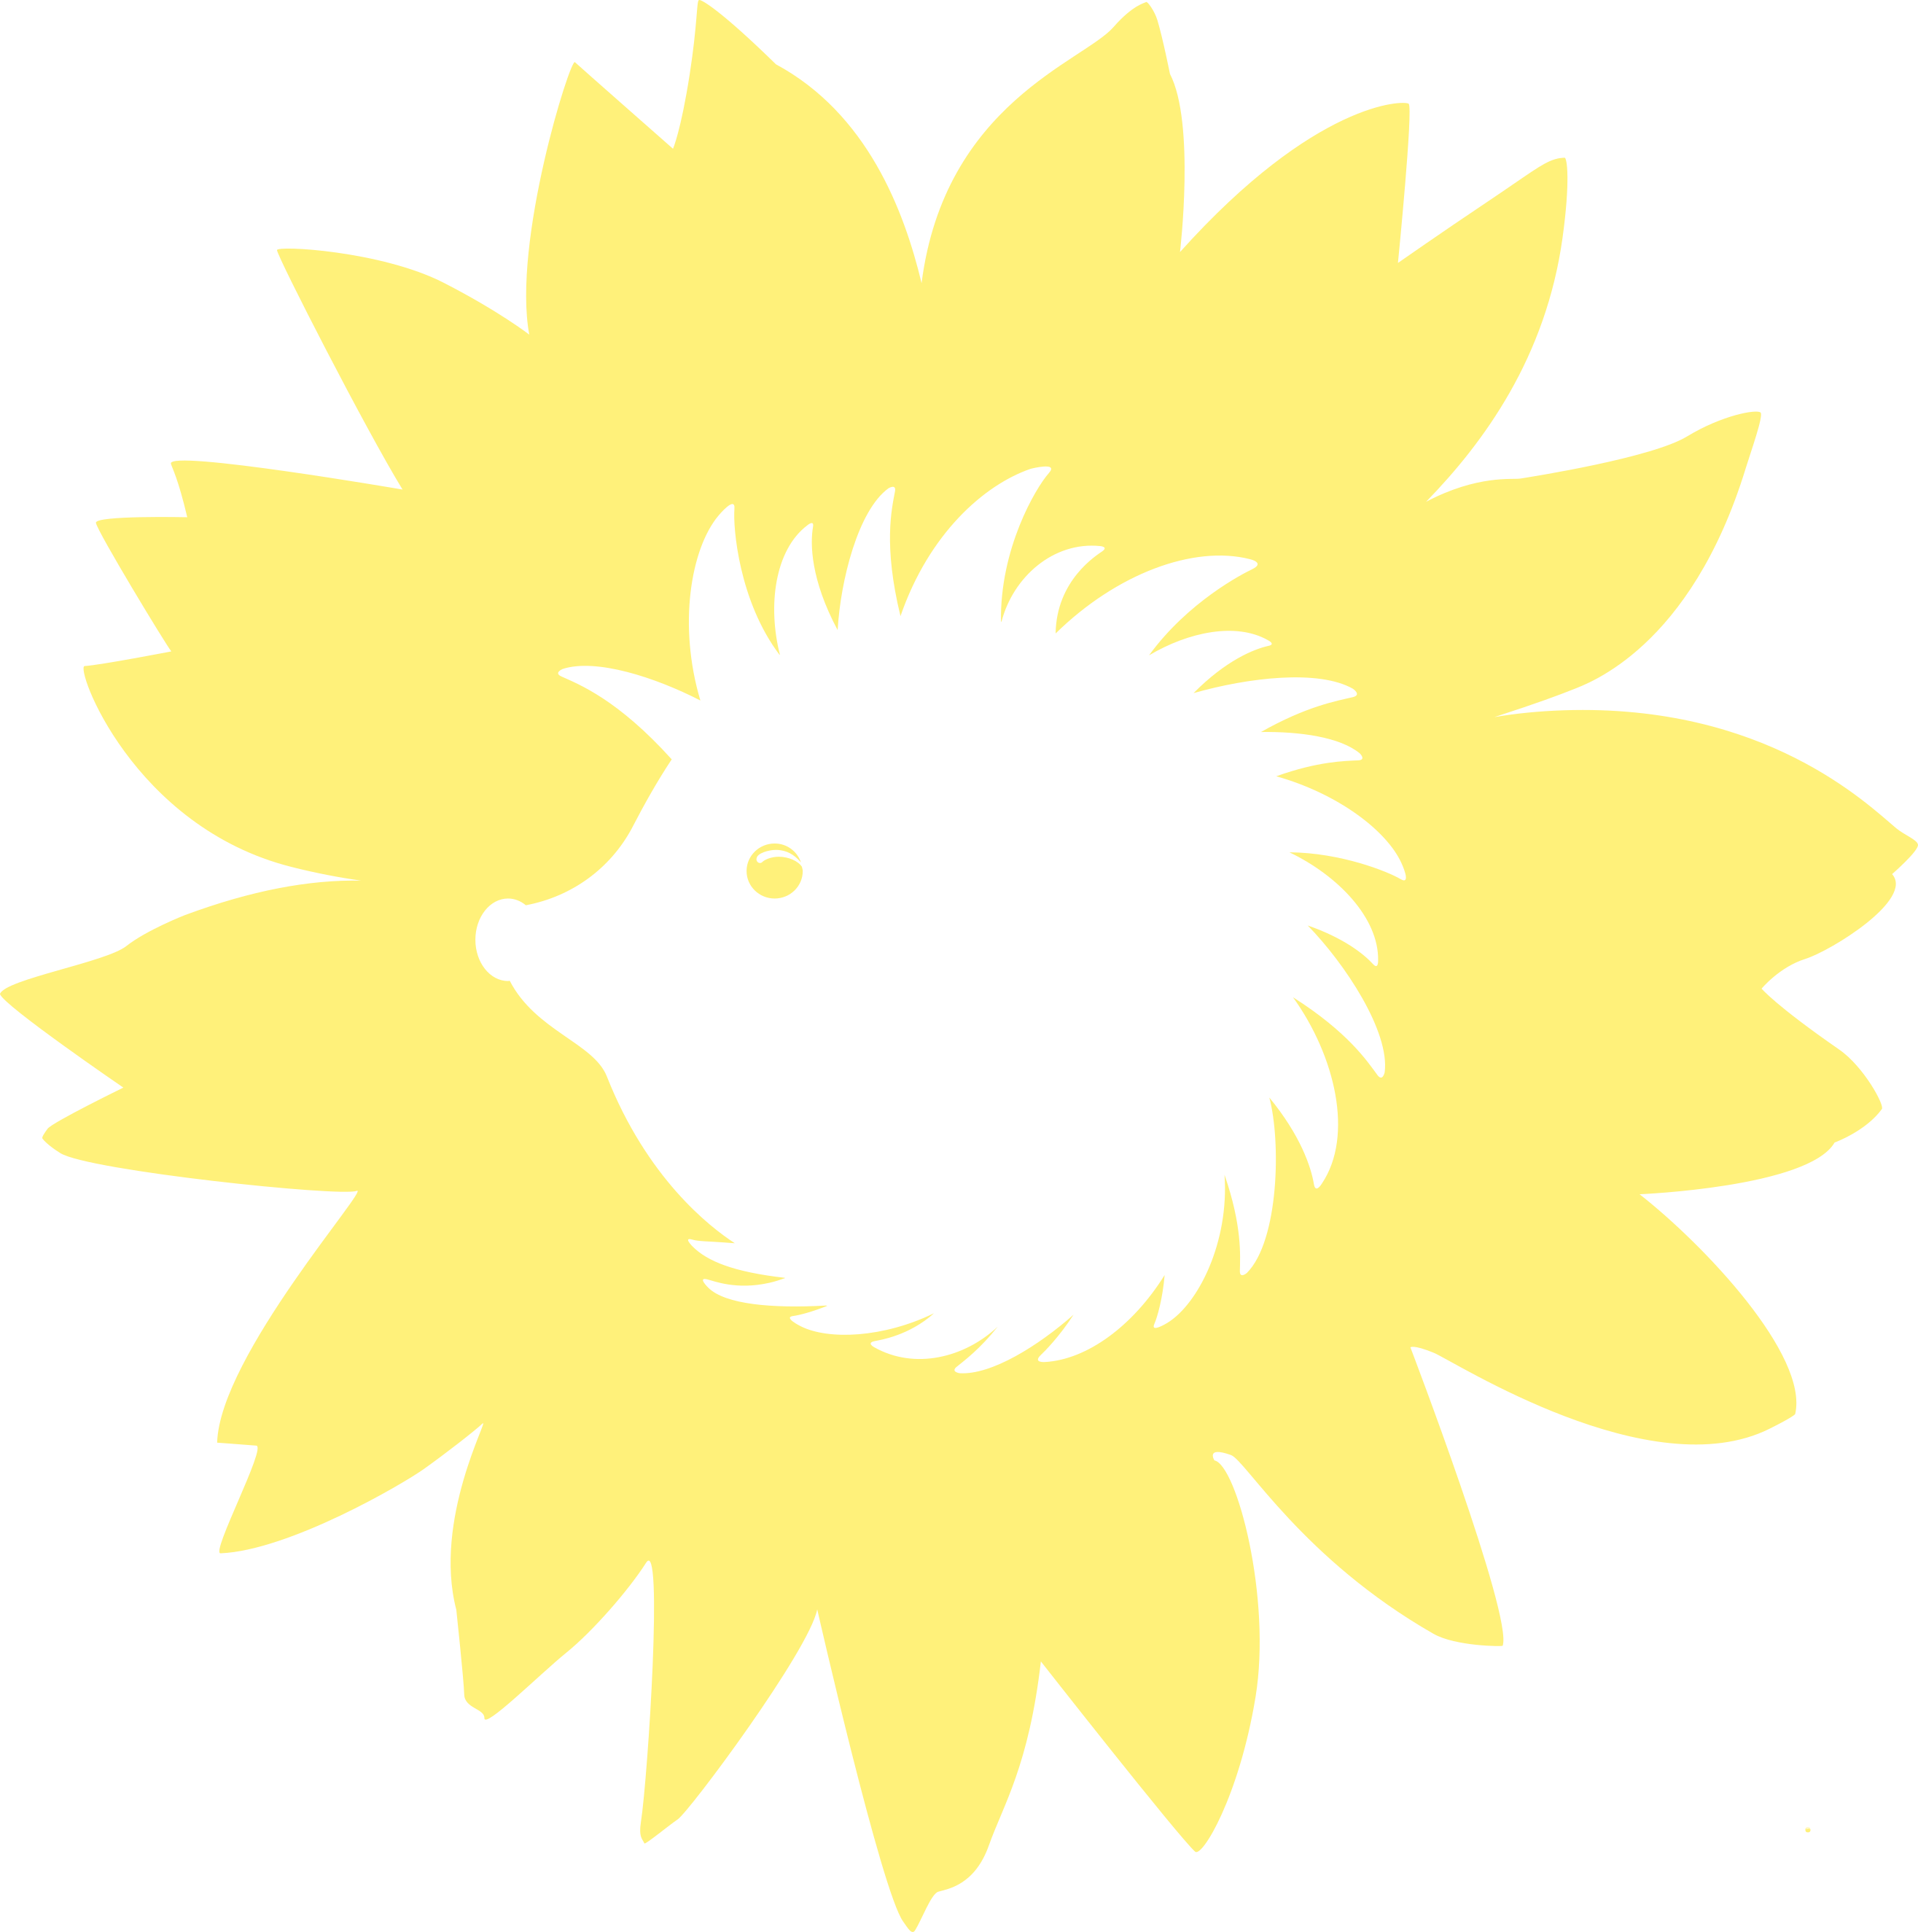 Der Sonnenigel, Logo von B'90/GRÜNE in Berlin: Grafik mit einem Kranz aus gelben Blüten einer Sonnenblume, in der Mitte statt des Blütenkorbs ein Ausschnitt in Form eines Igels.